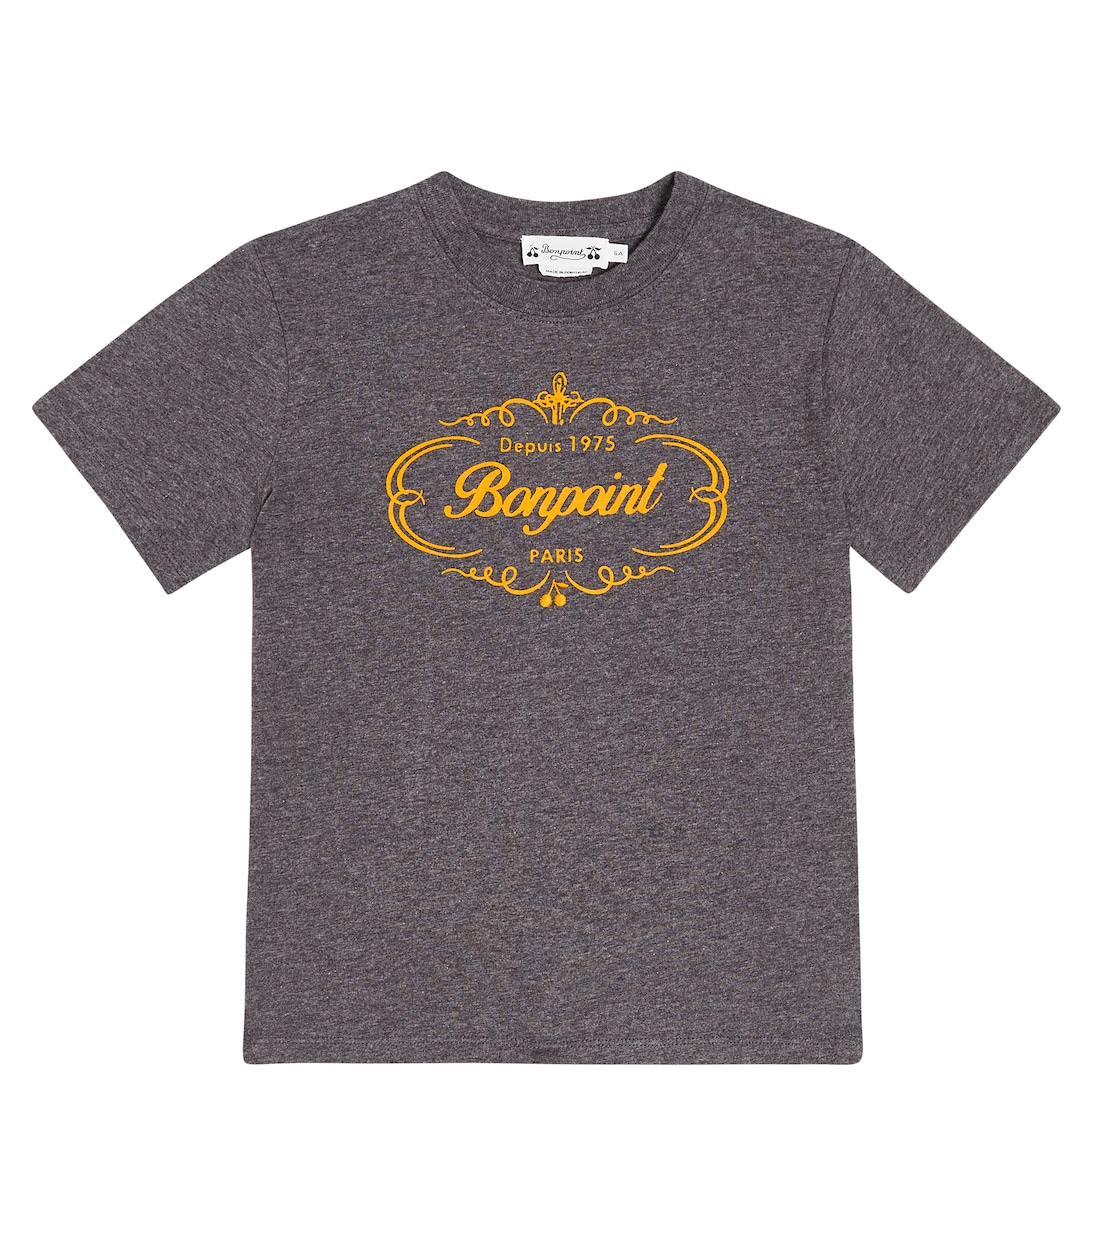 Хлопковая футболка с логотипом Thibald Bonpoint, серый футболка из хлопкового джерси с принтом thibald bonpoint серый